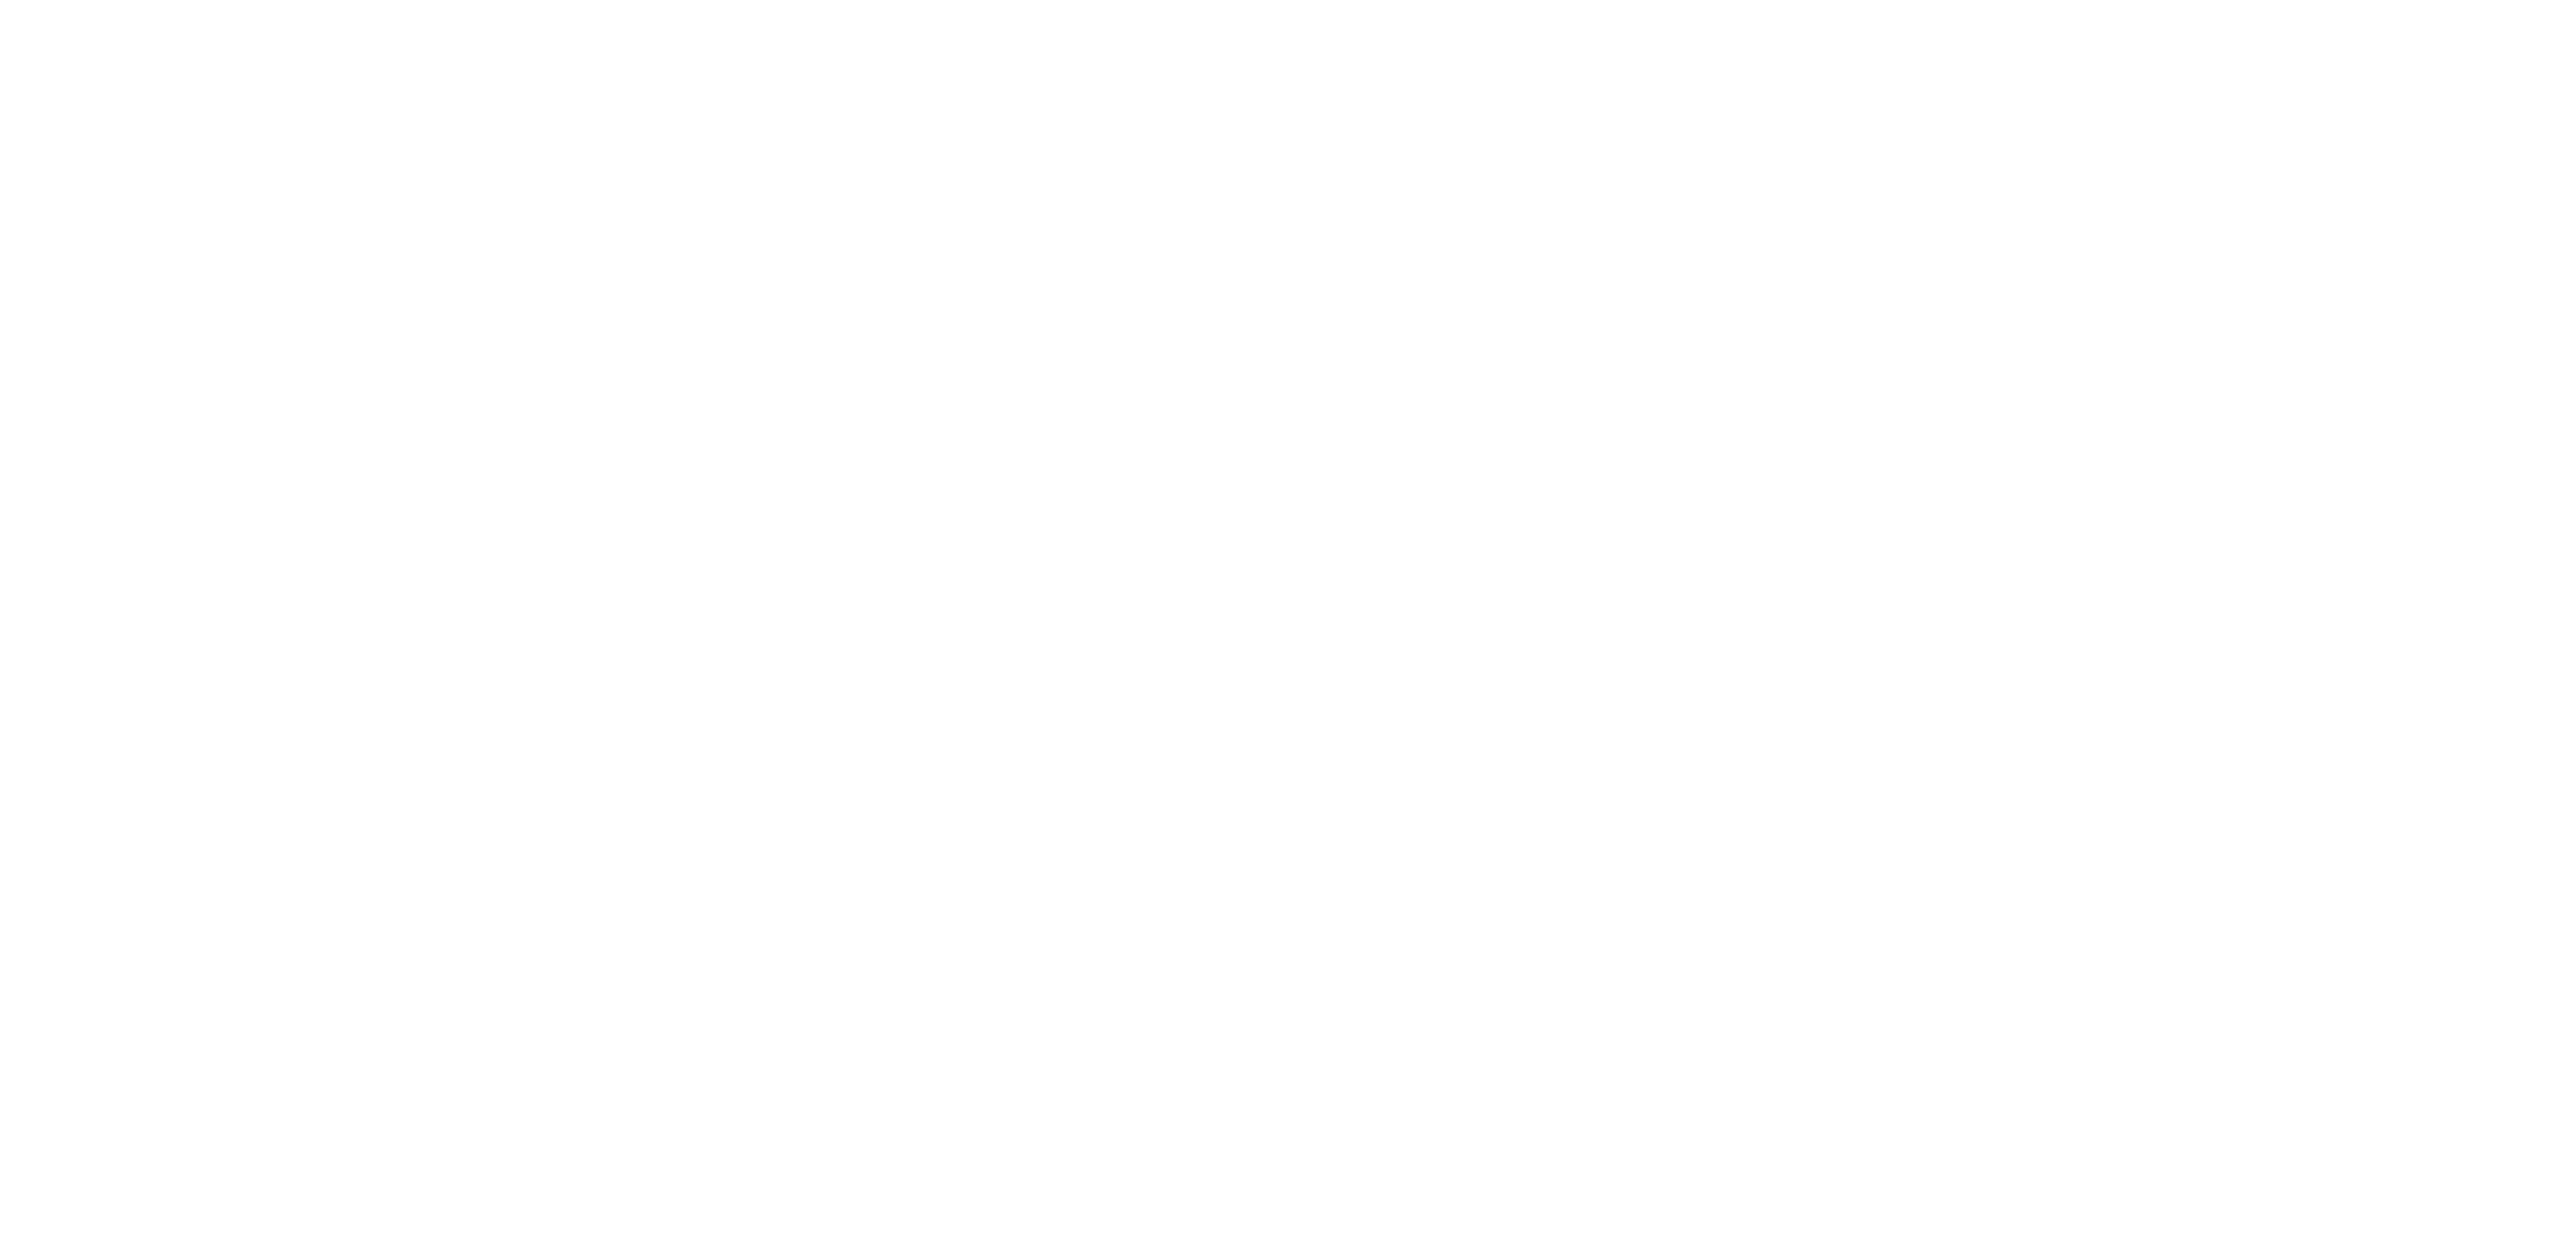 Homecoming 2021 logo